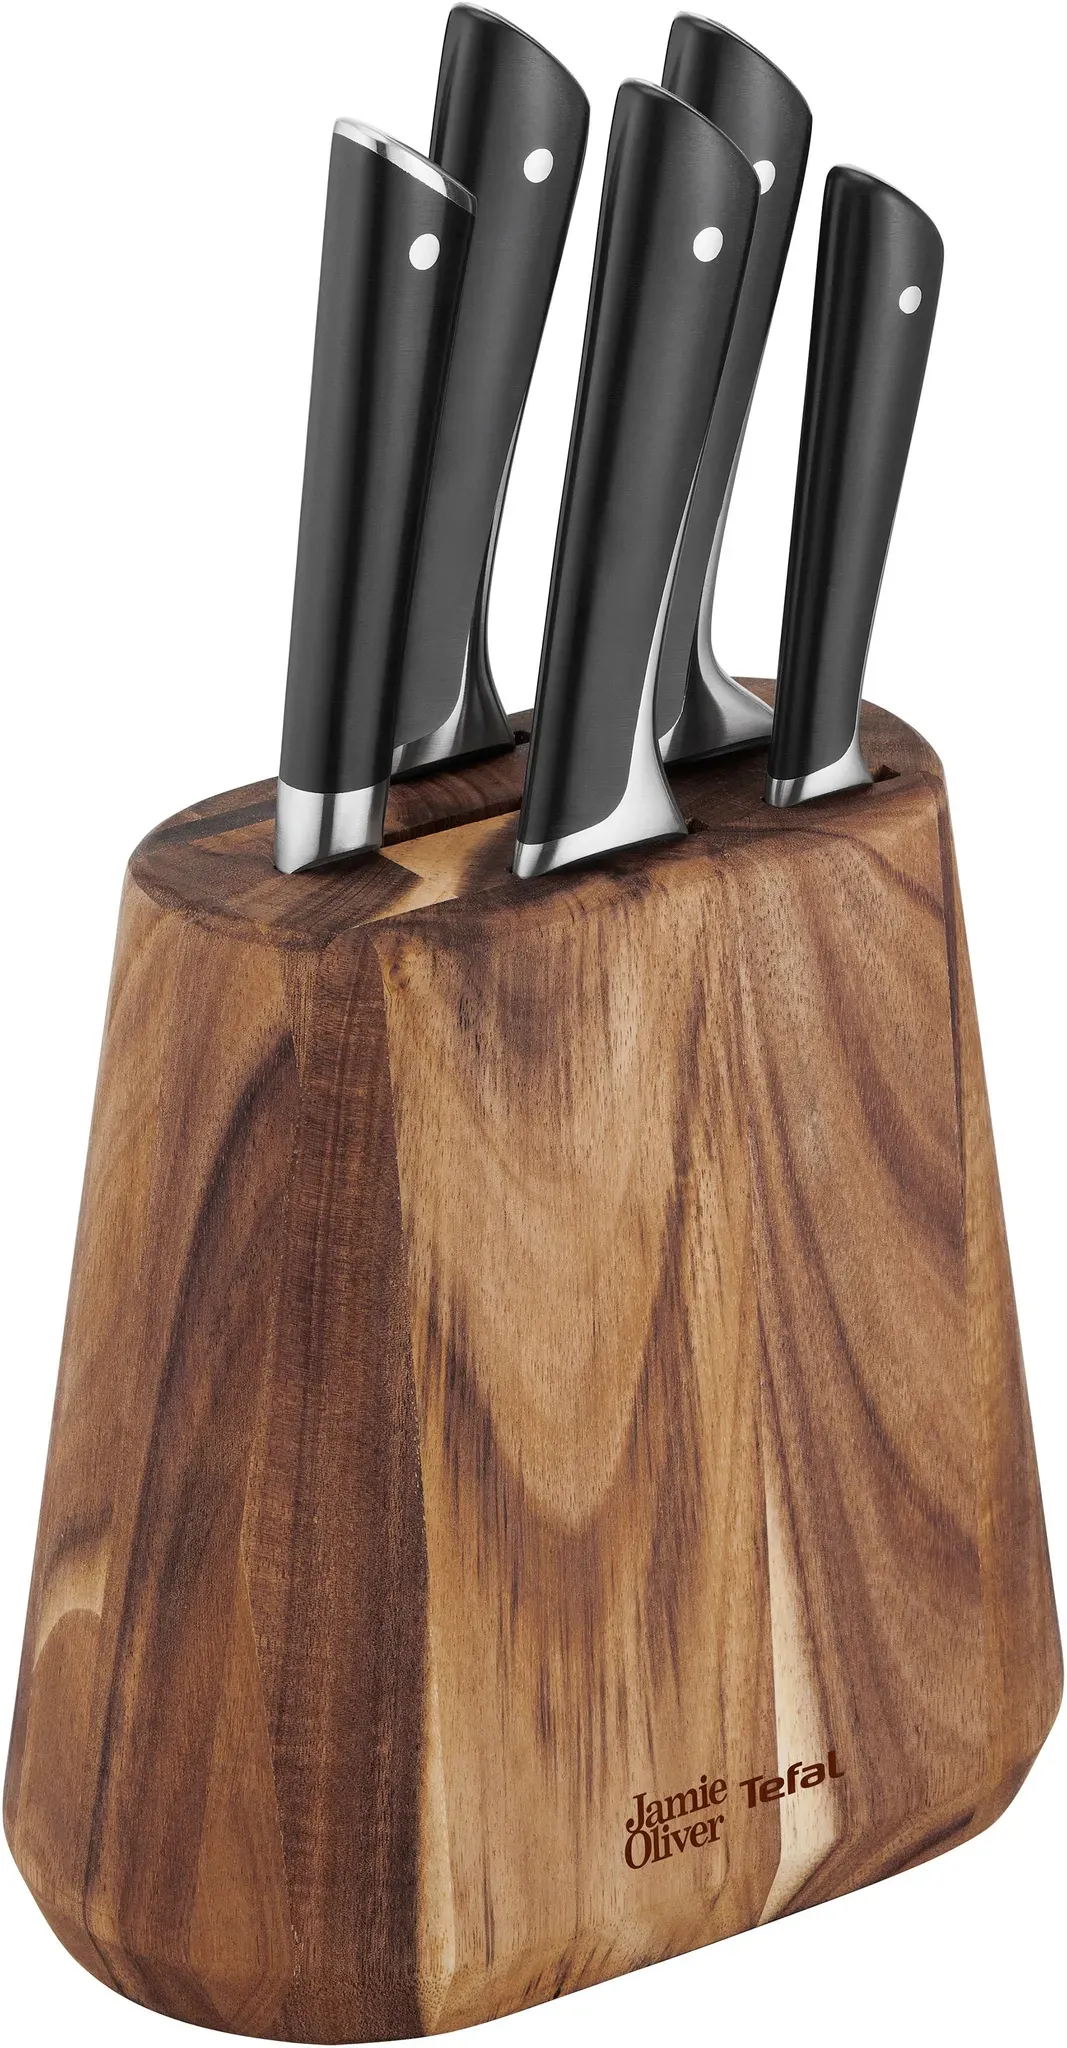 Jamie Oliver by Tefal K267S7 7‑teiliger Messerblock | 6 Küchenmesser Holz | hohe Schneideleistung | unverwechselbares Design | widerstandsfähige und langlebige Klingen | Braun/Schwarz